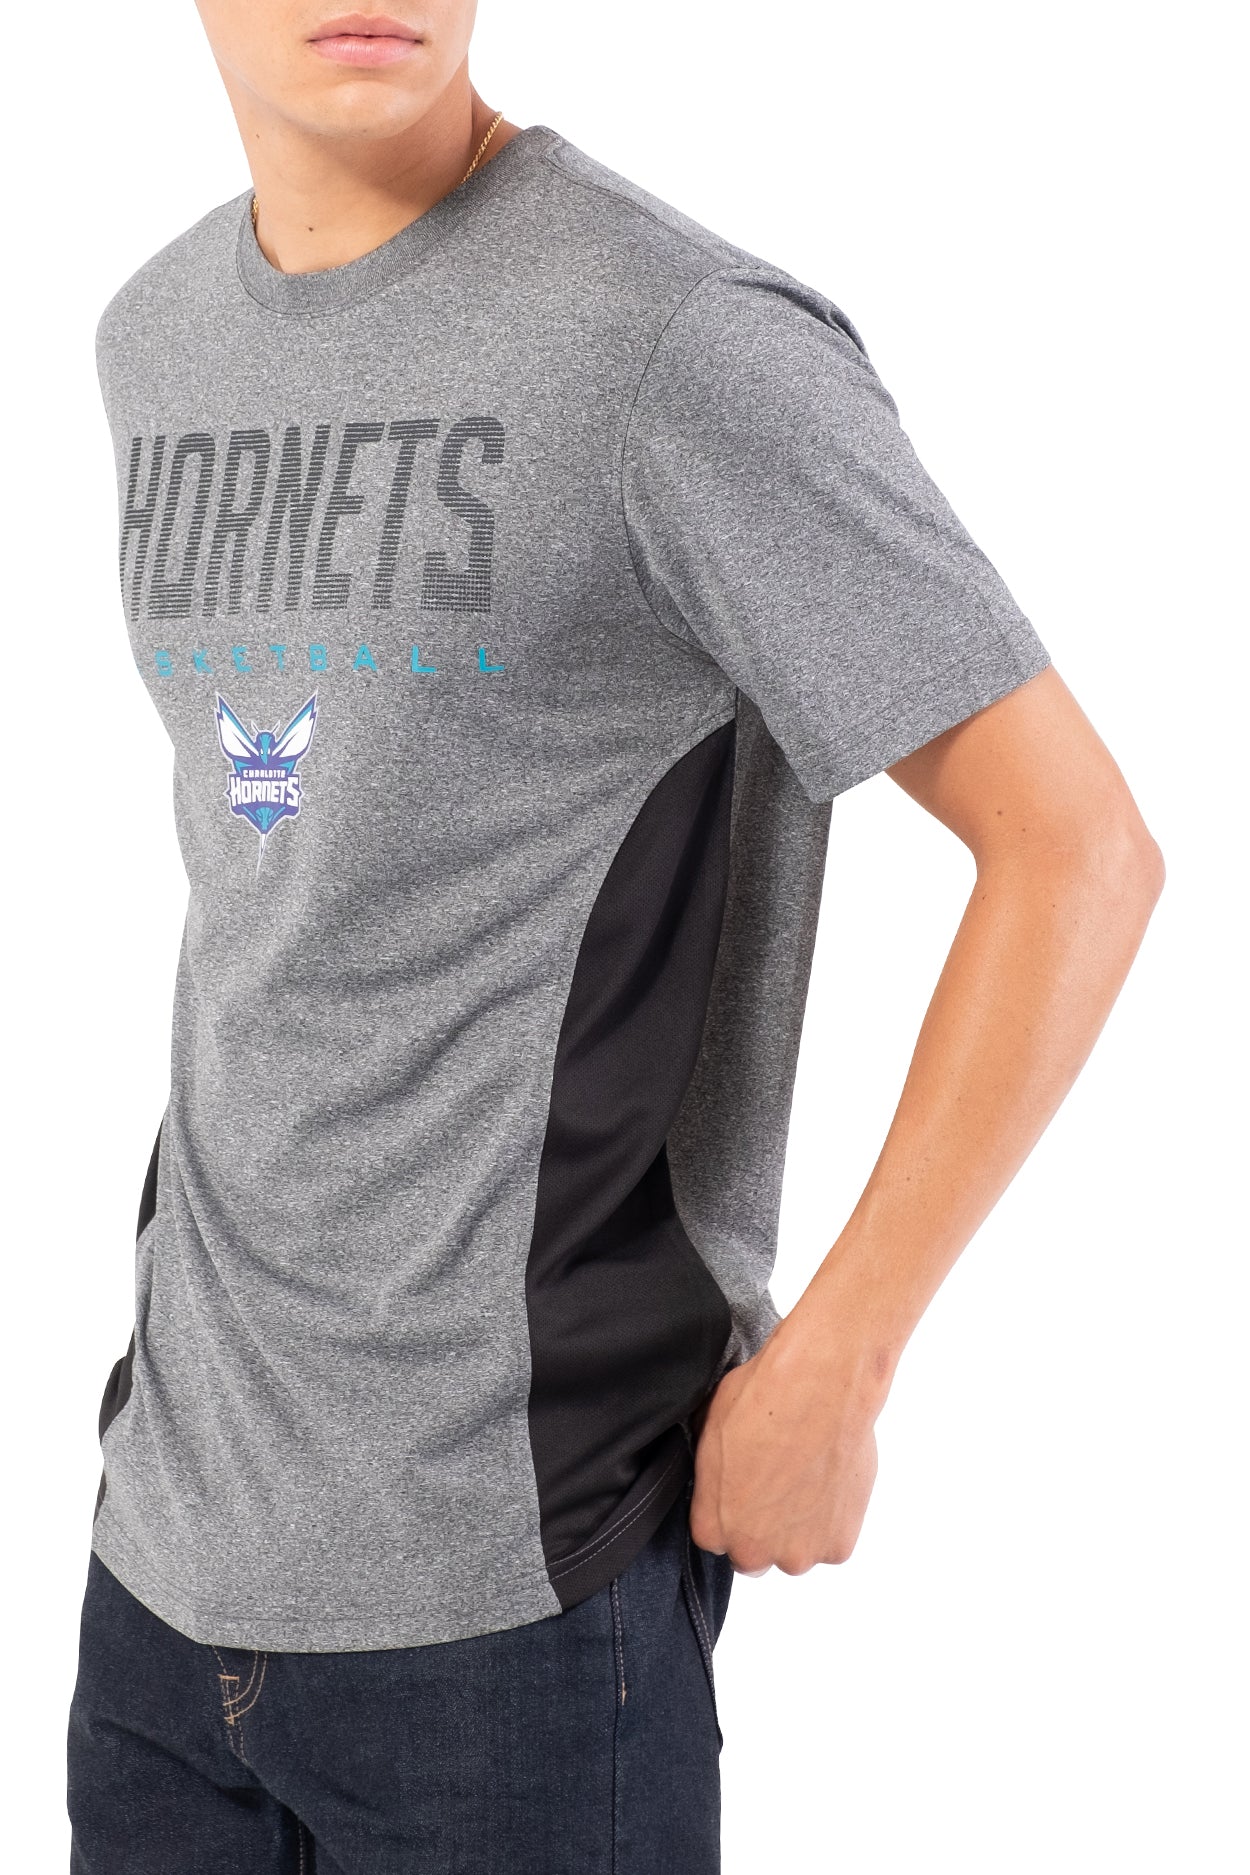 NBA Charlotte Hornets Men's Short Sleeve Tee|Charlotte Hornets